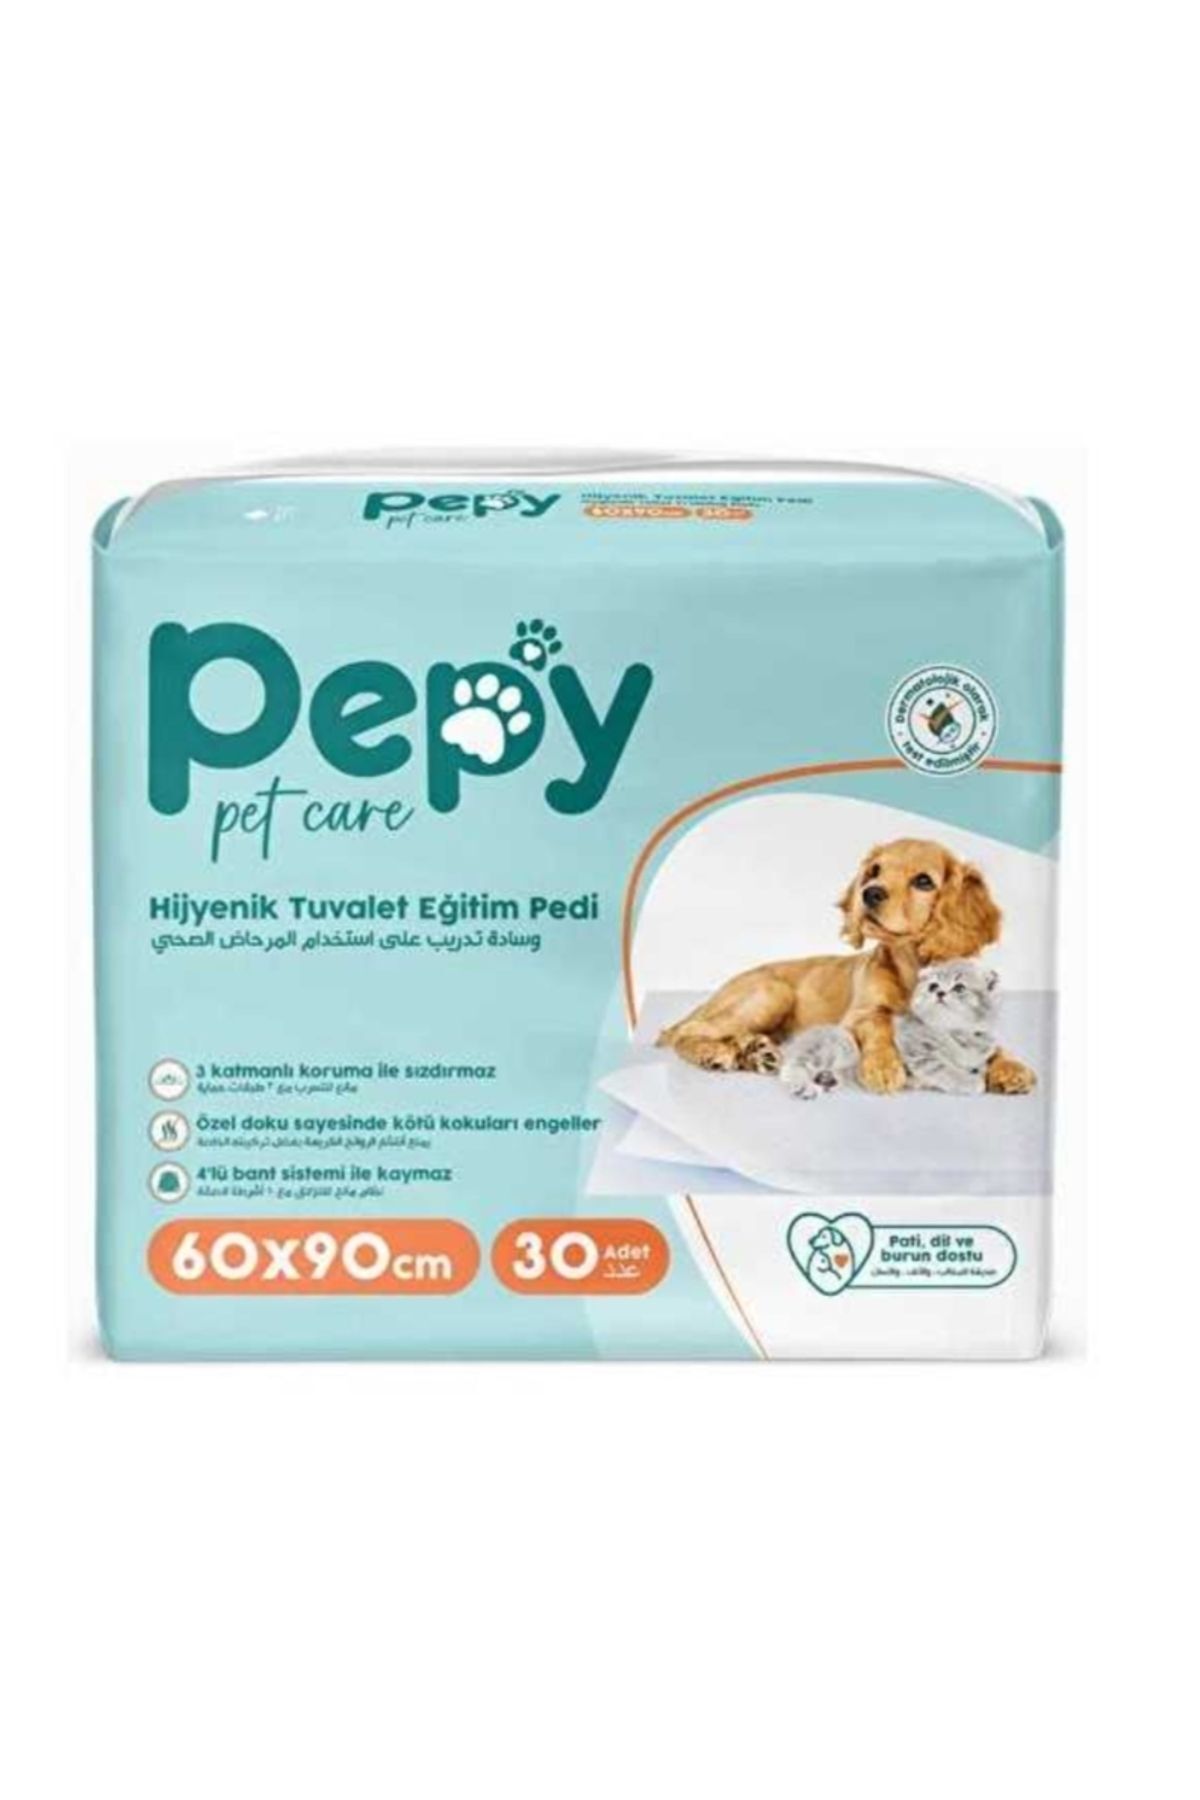 PEPY Hijyenik Yapışkanlı Tuvalet Eğitim Pedi Köpek / Kedi Çiş Pedi 30 Adet